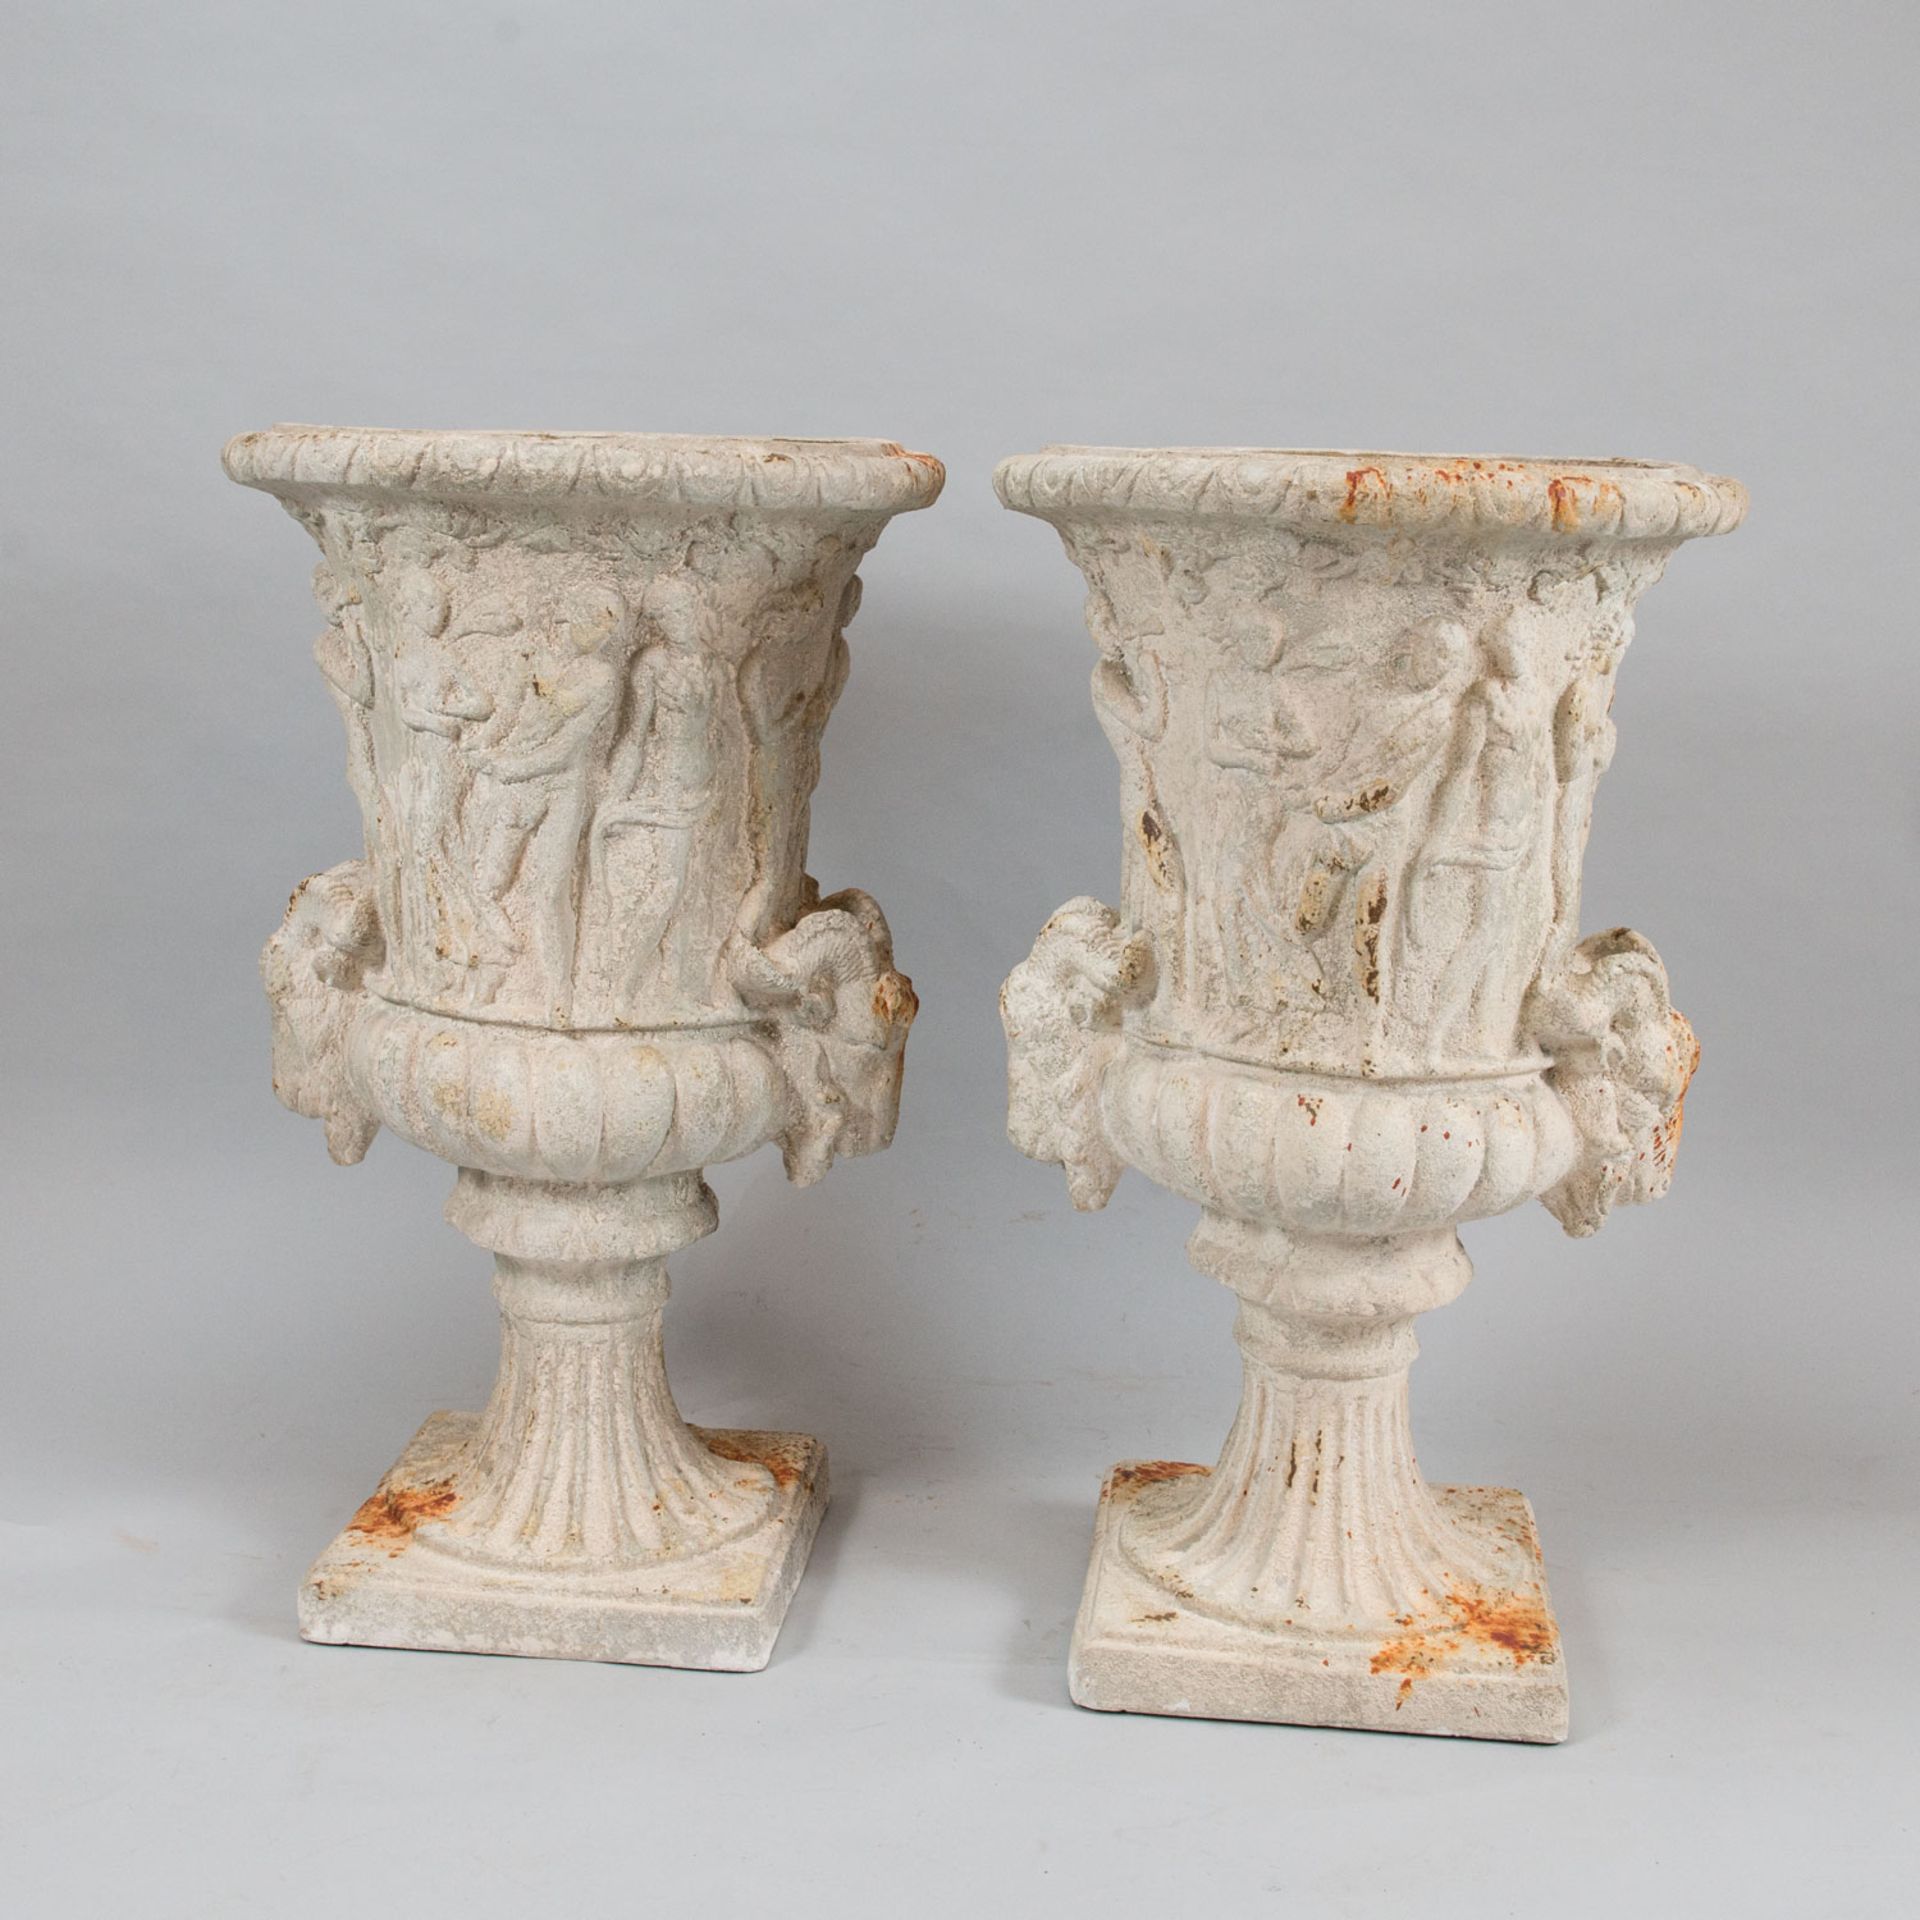 Pair of classical urn vase